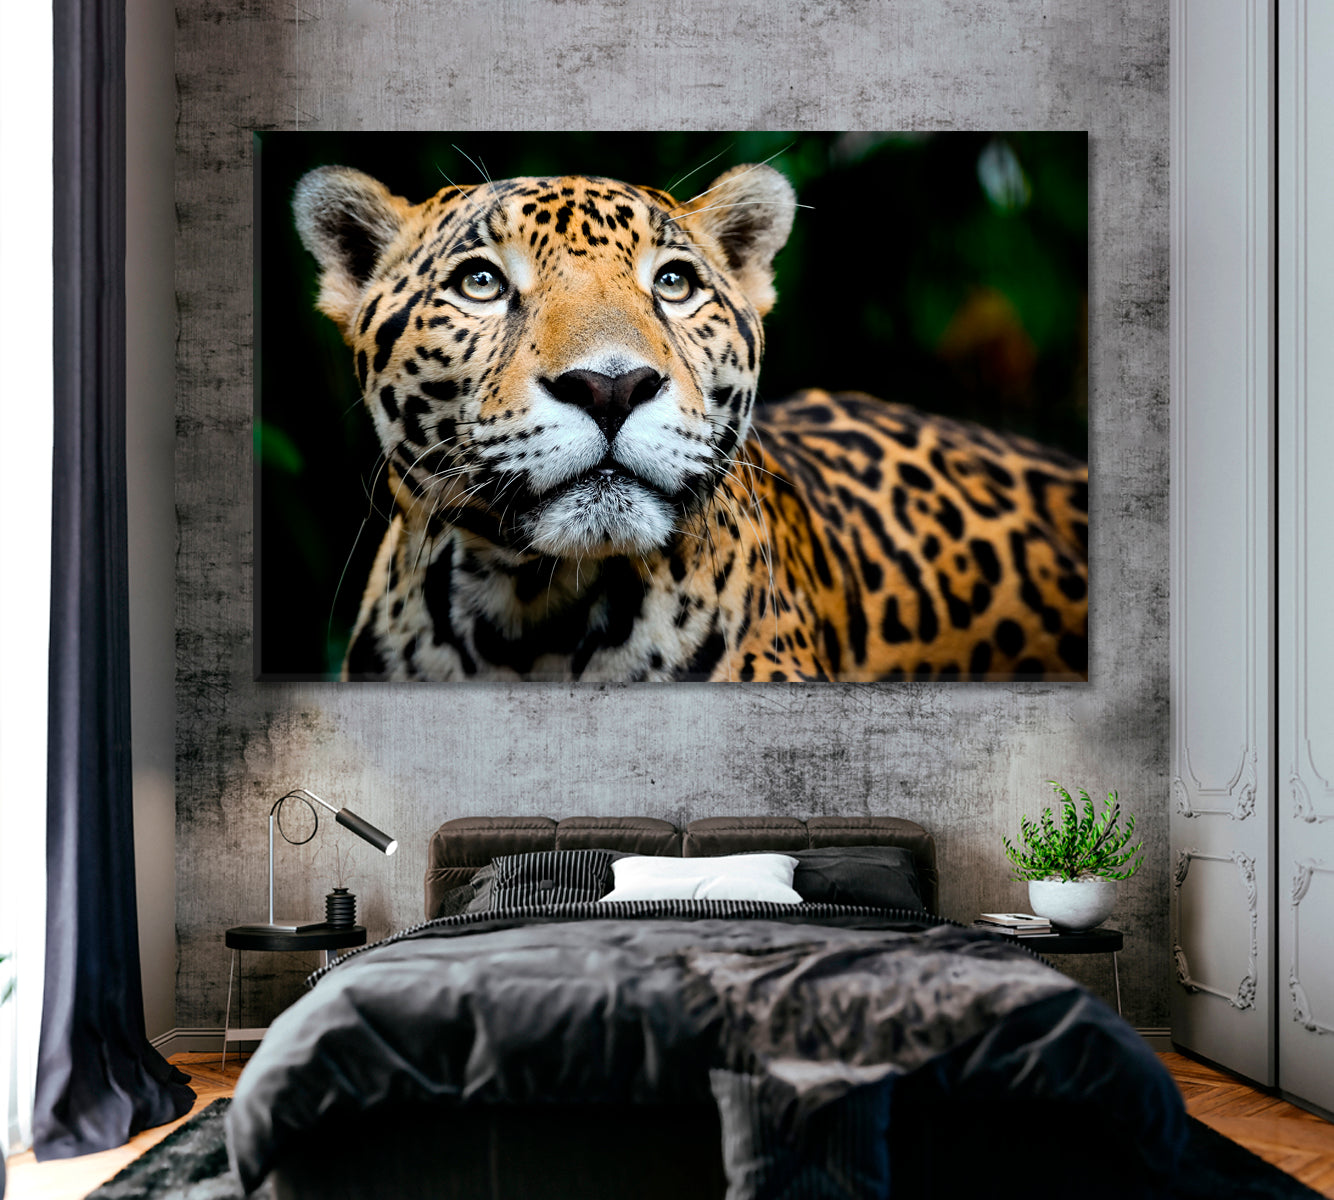 Jaguar Portrait Canvas Print ArtLexy 1 Panel 24"x16" inches 